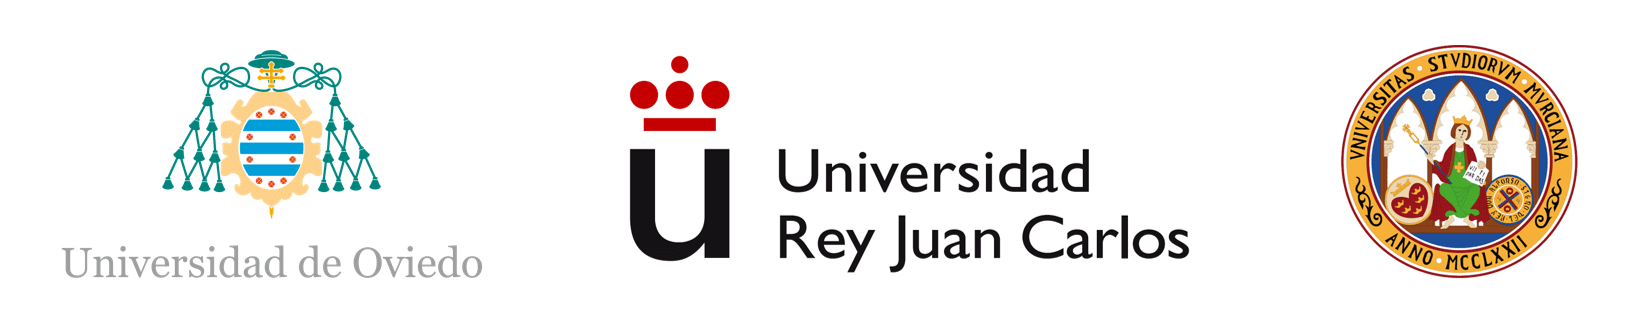 Logotipos universidades colaboradoras Ginemed